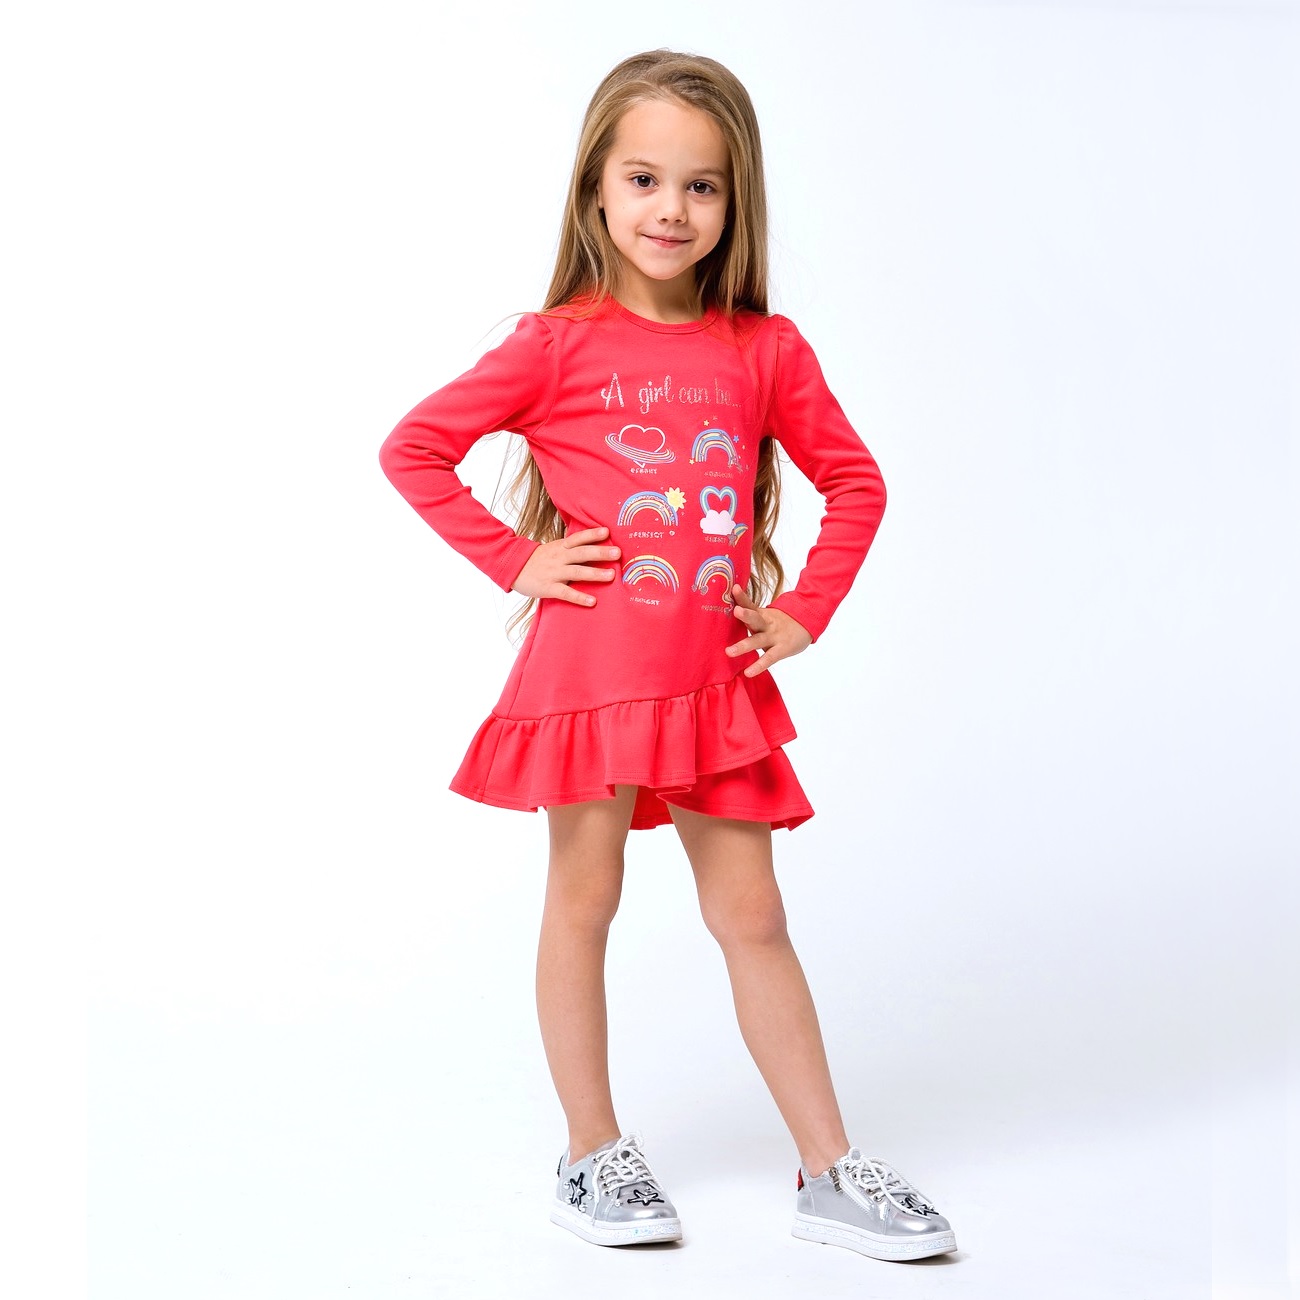 Детское платье для девочки "Только для девочек", розовый коралл (120256), Smil (Смил)